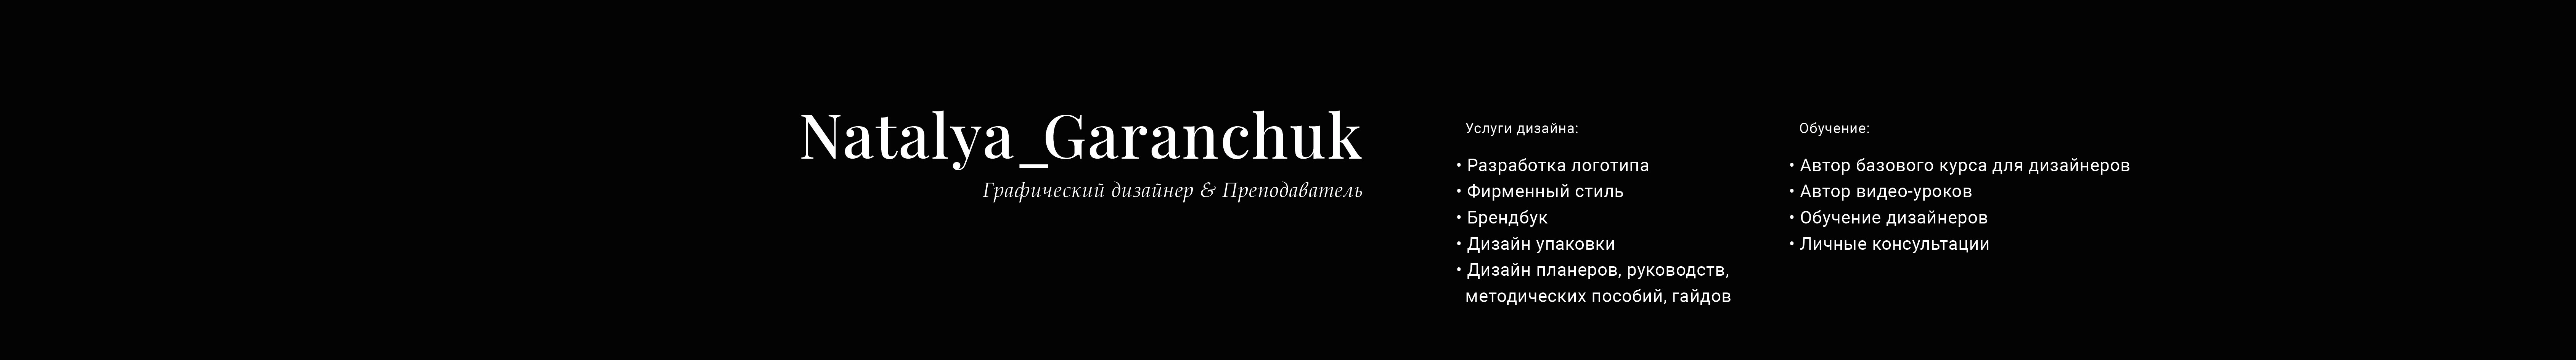 Bannière de profil de Natalia Garanchuk